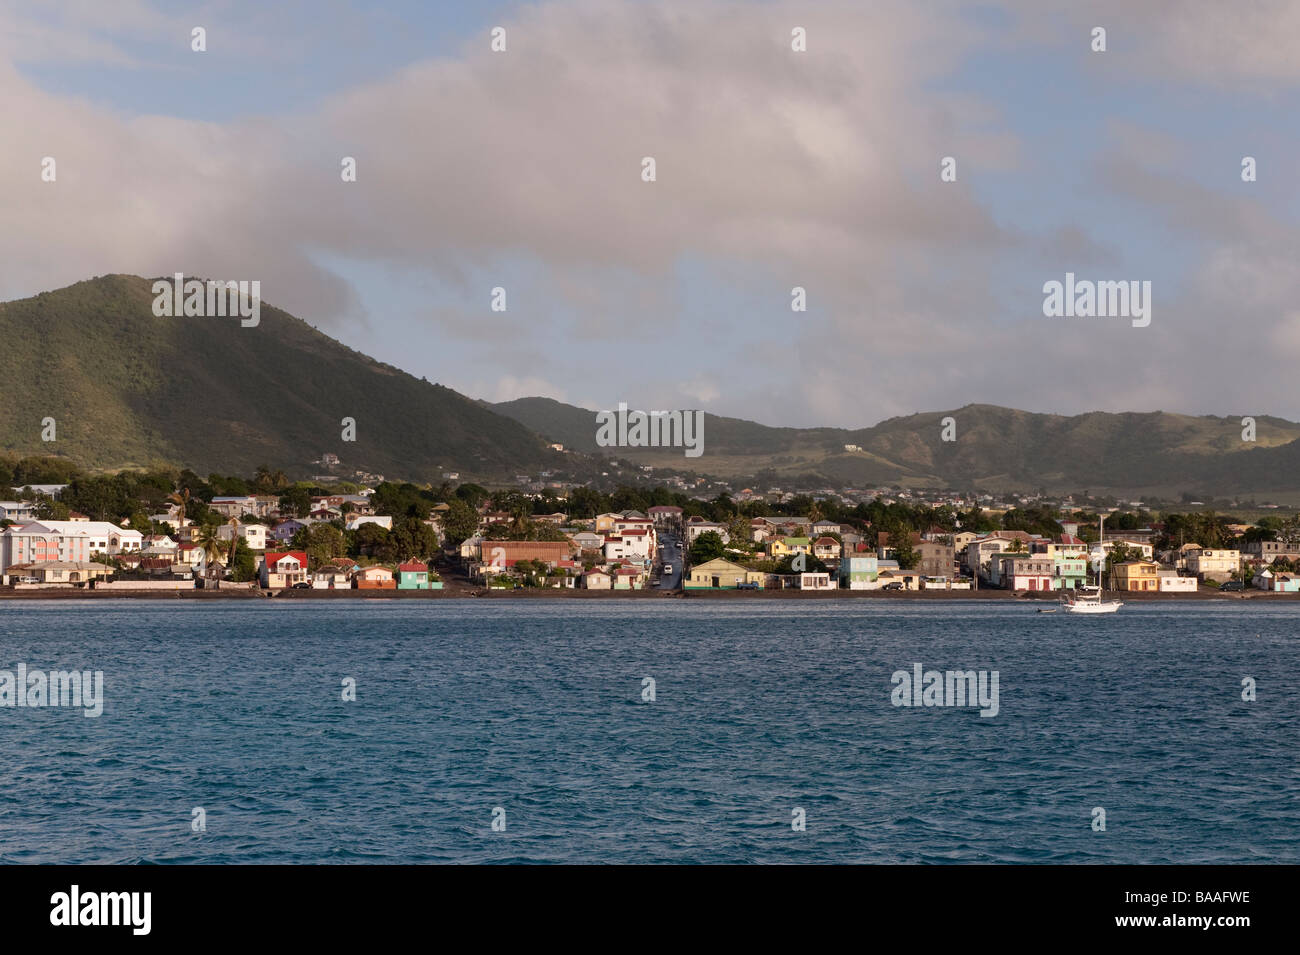 Basseterre la capitale de St Kitts photographié de l'étranger Banque D'Images